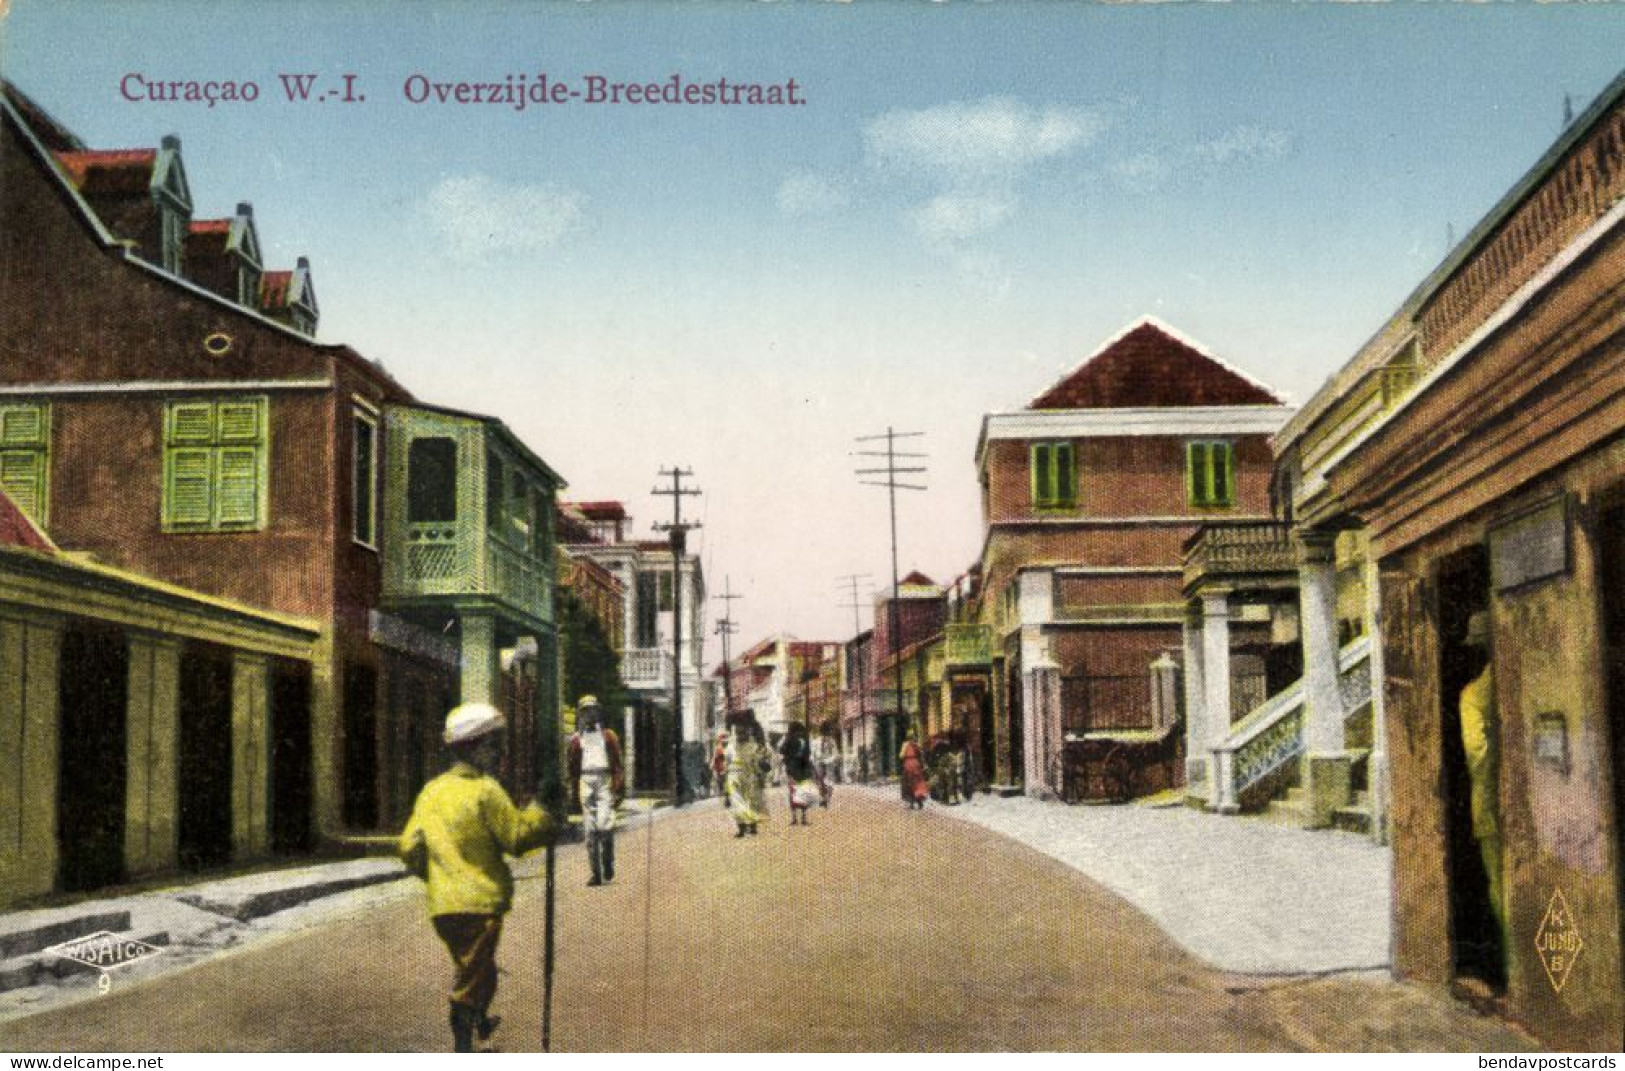 Curacao, W.I., WILLEMSTAD, Overzijde Breedestraat (1910s) Postcard - Curaçao